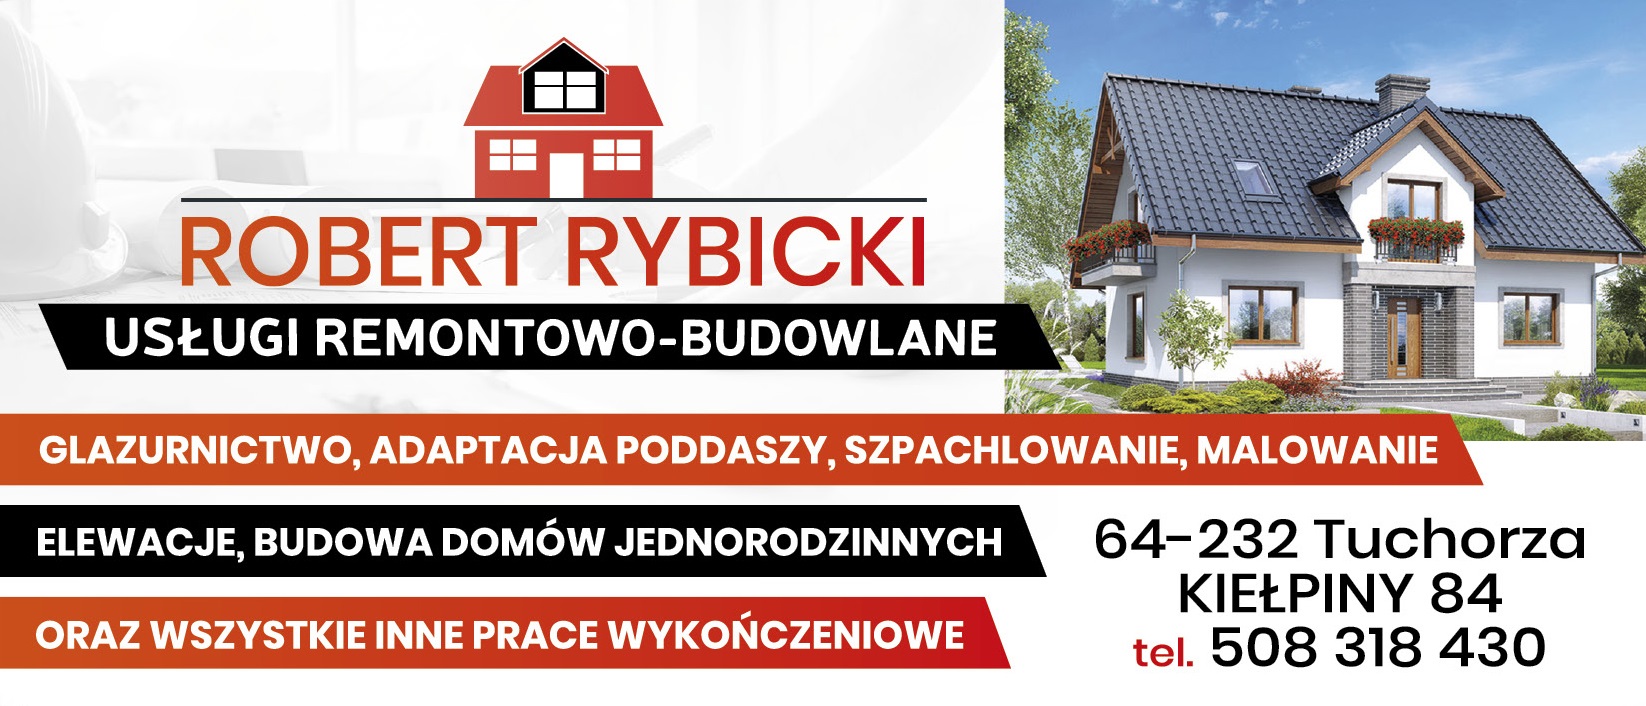 Usługi Remontowo - Budowlane, Robert Rybicki